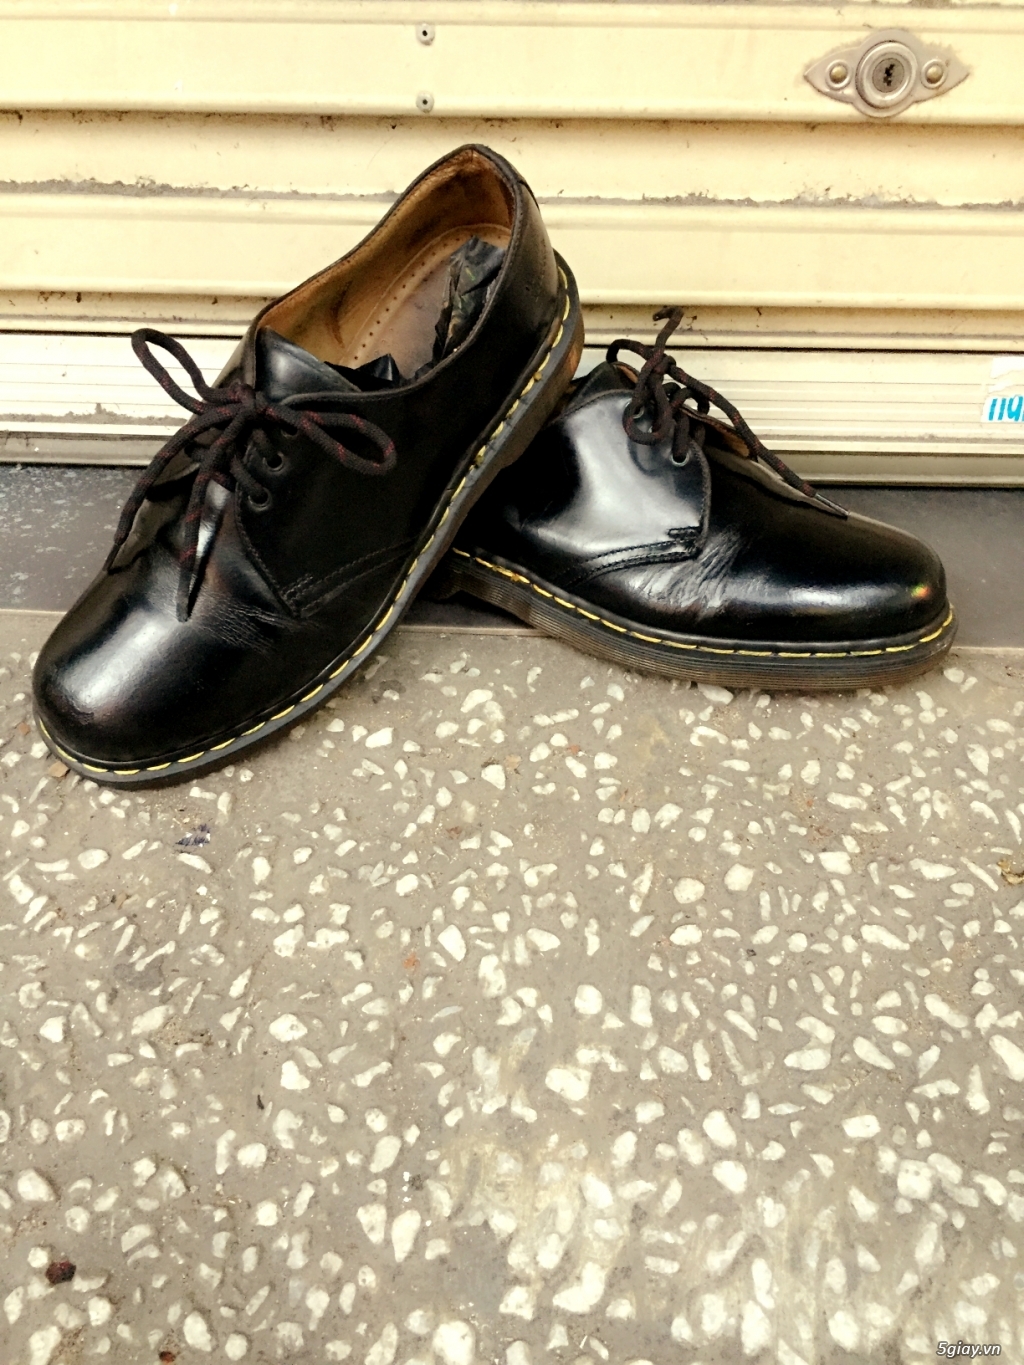 HCM bán đôi giày hiệu dr martens made in englands giá rẽ - 1